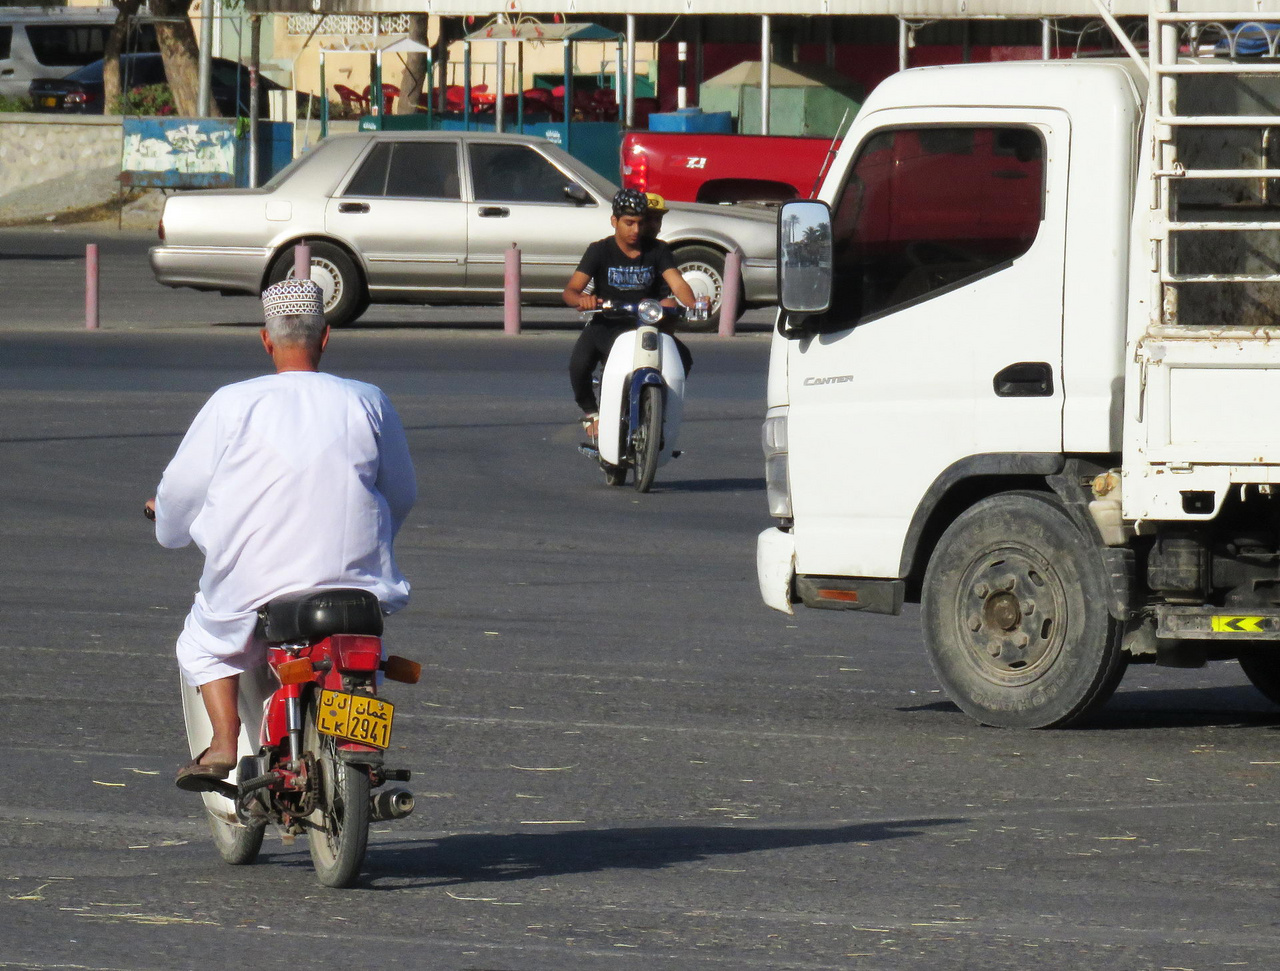 Nem túl gyakori látvány Ománban: motorosok Nizwában. A plusz húsz fokos télben még csak-csak megjárja, viszont nyáron, negyven fokban, tűző napon nem túl praktikus közlekedési mód a motorozás.